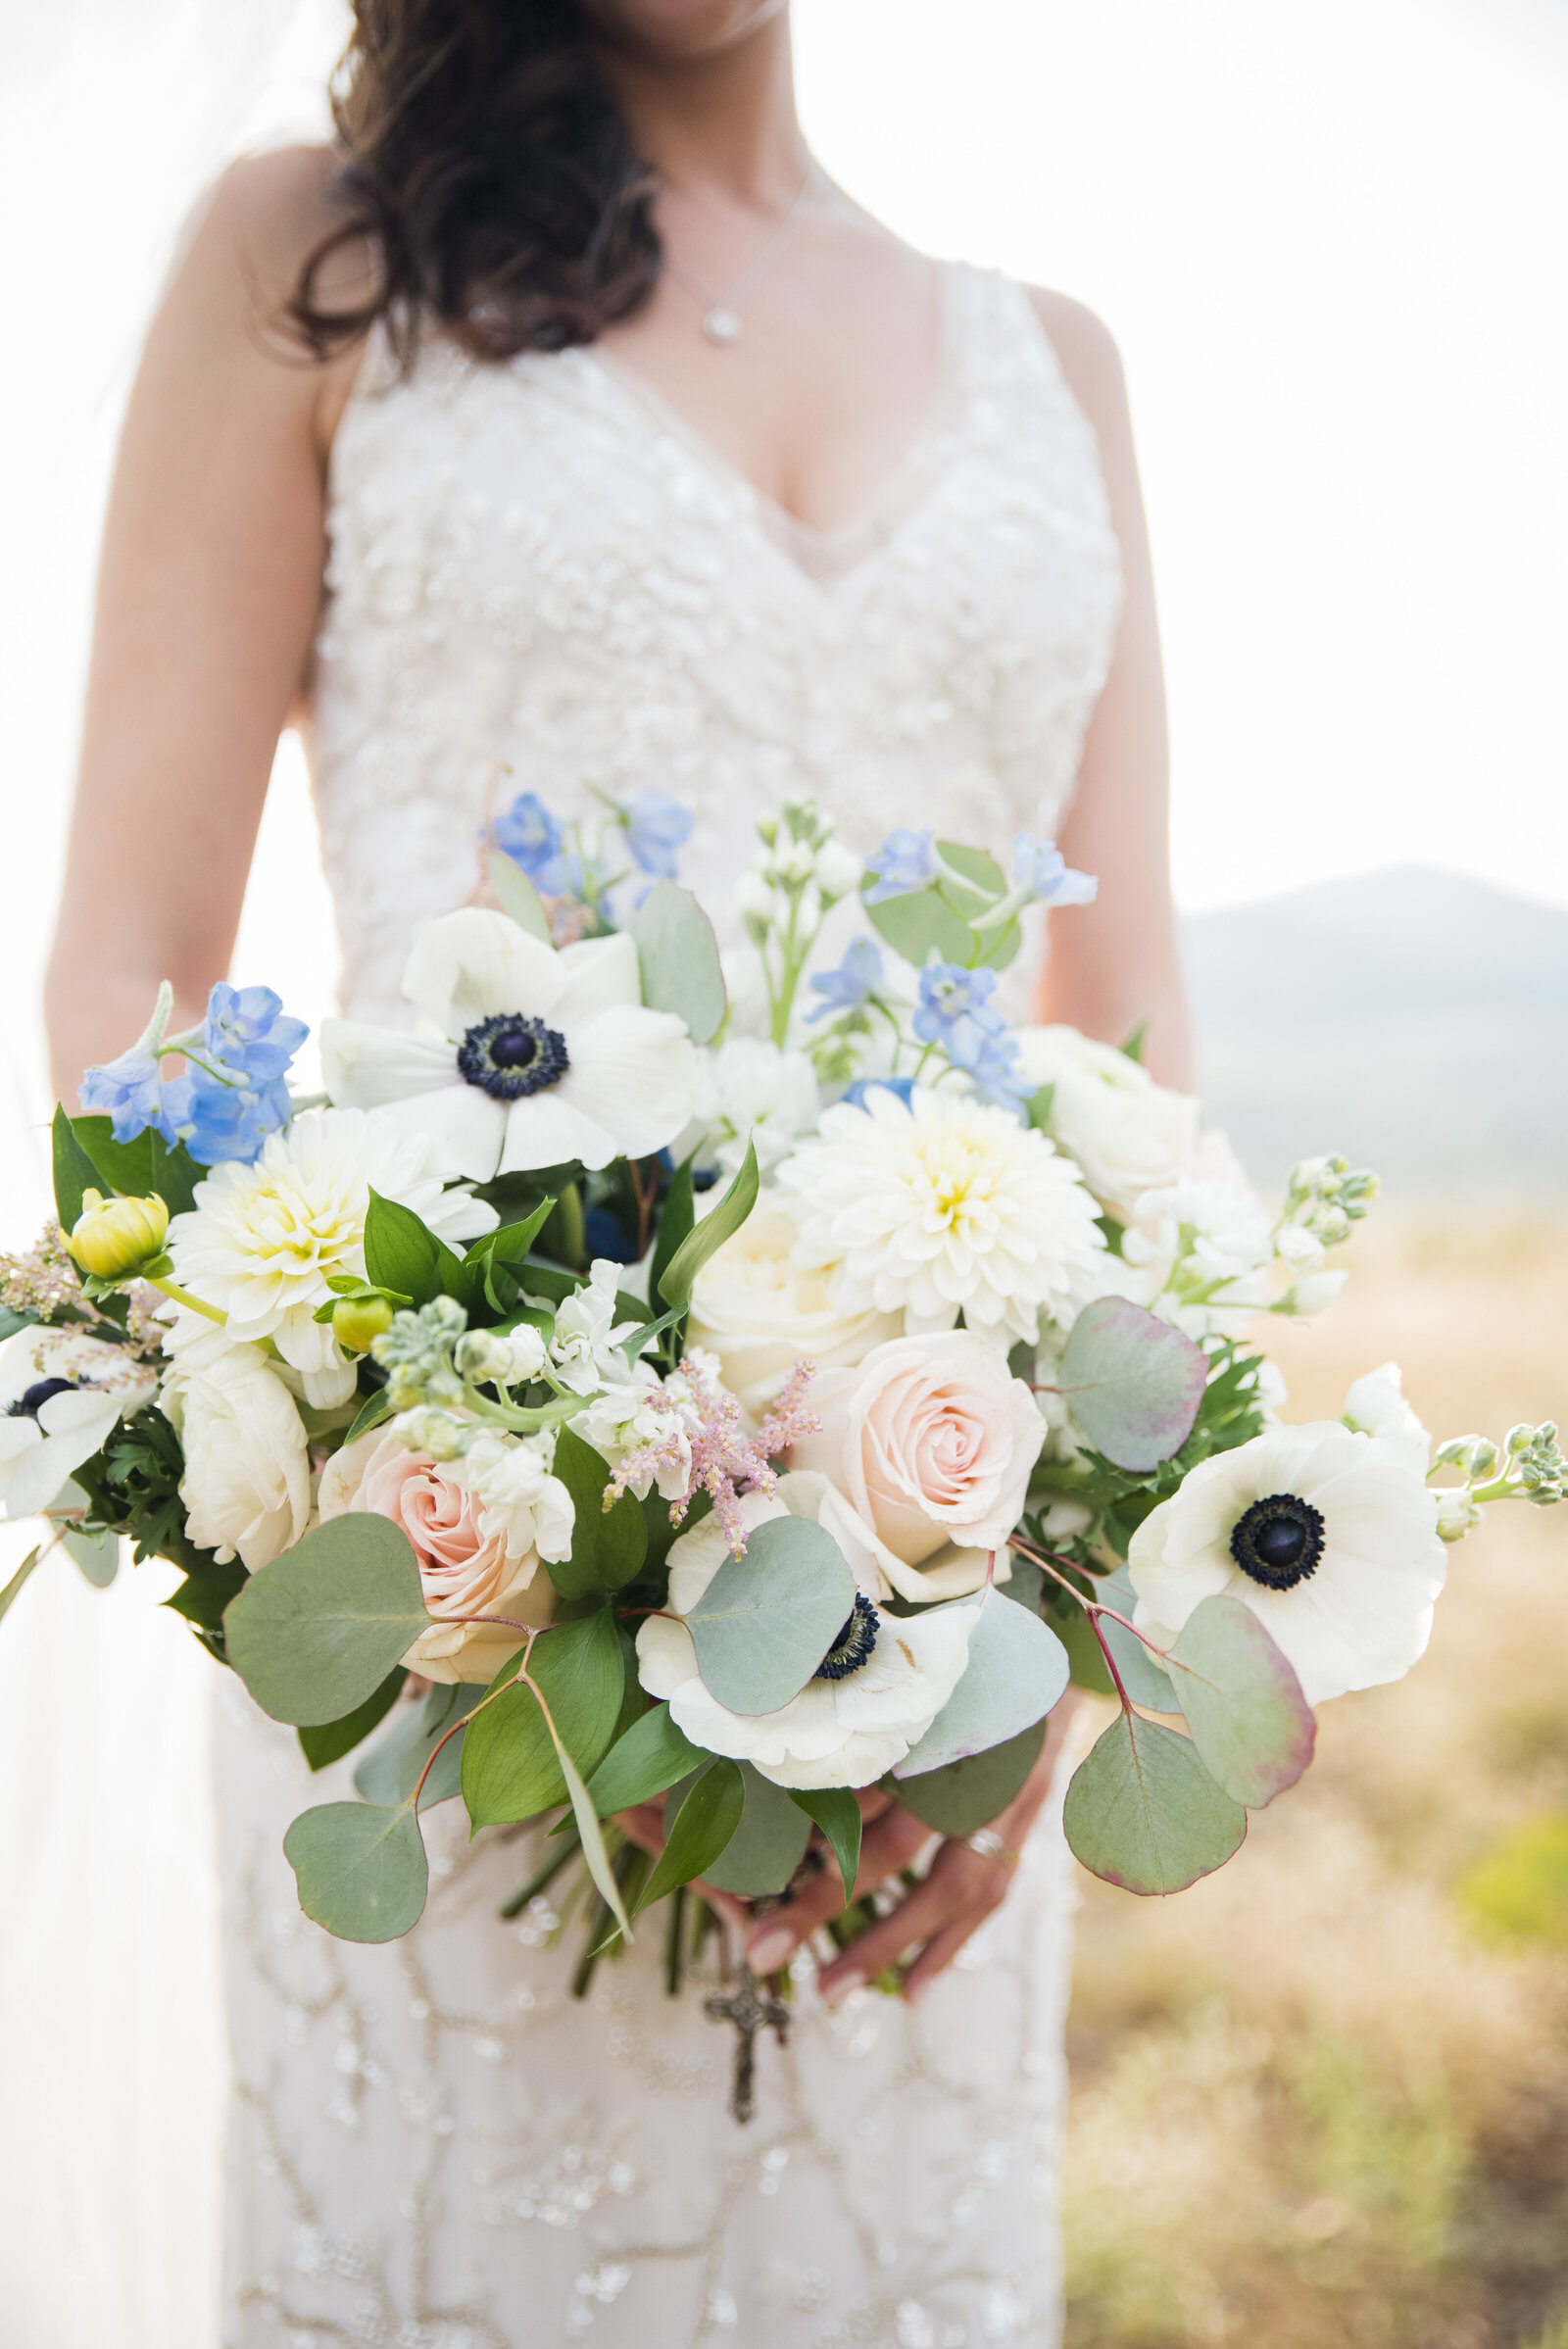 A close up shot of a bride's springtime wedding bouquet.